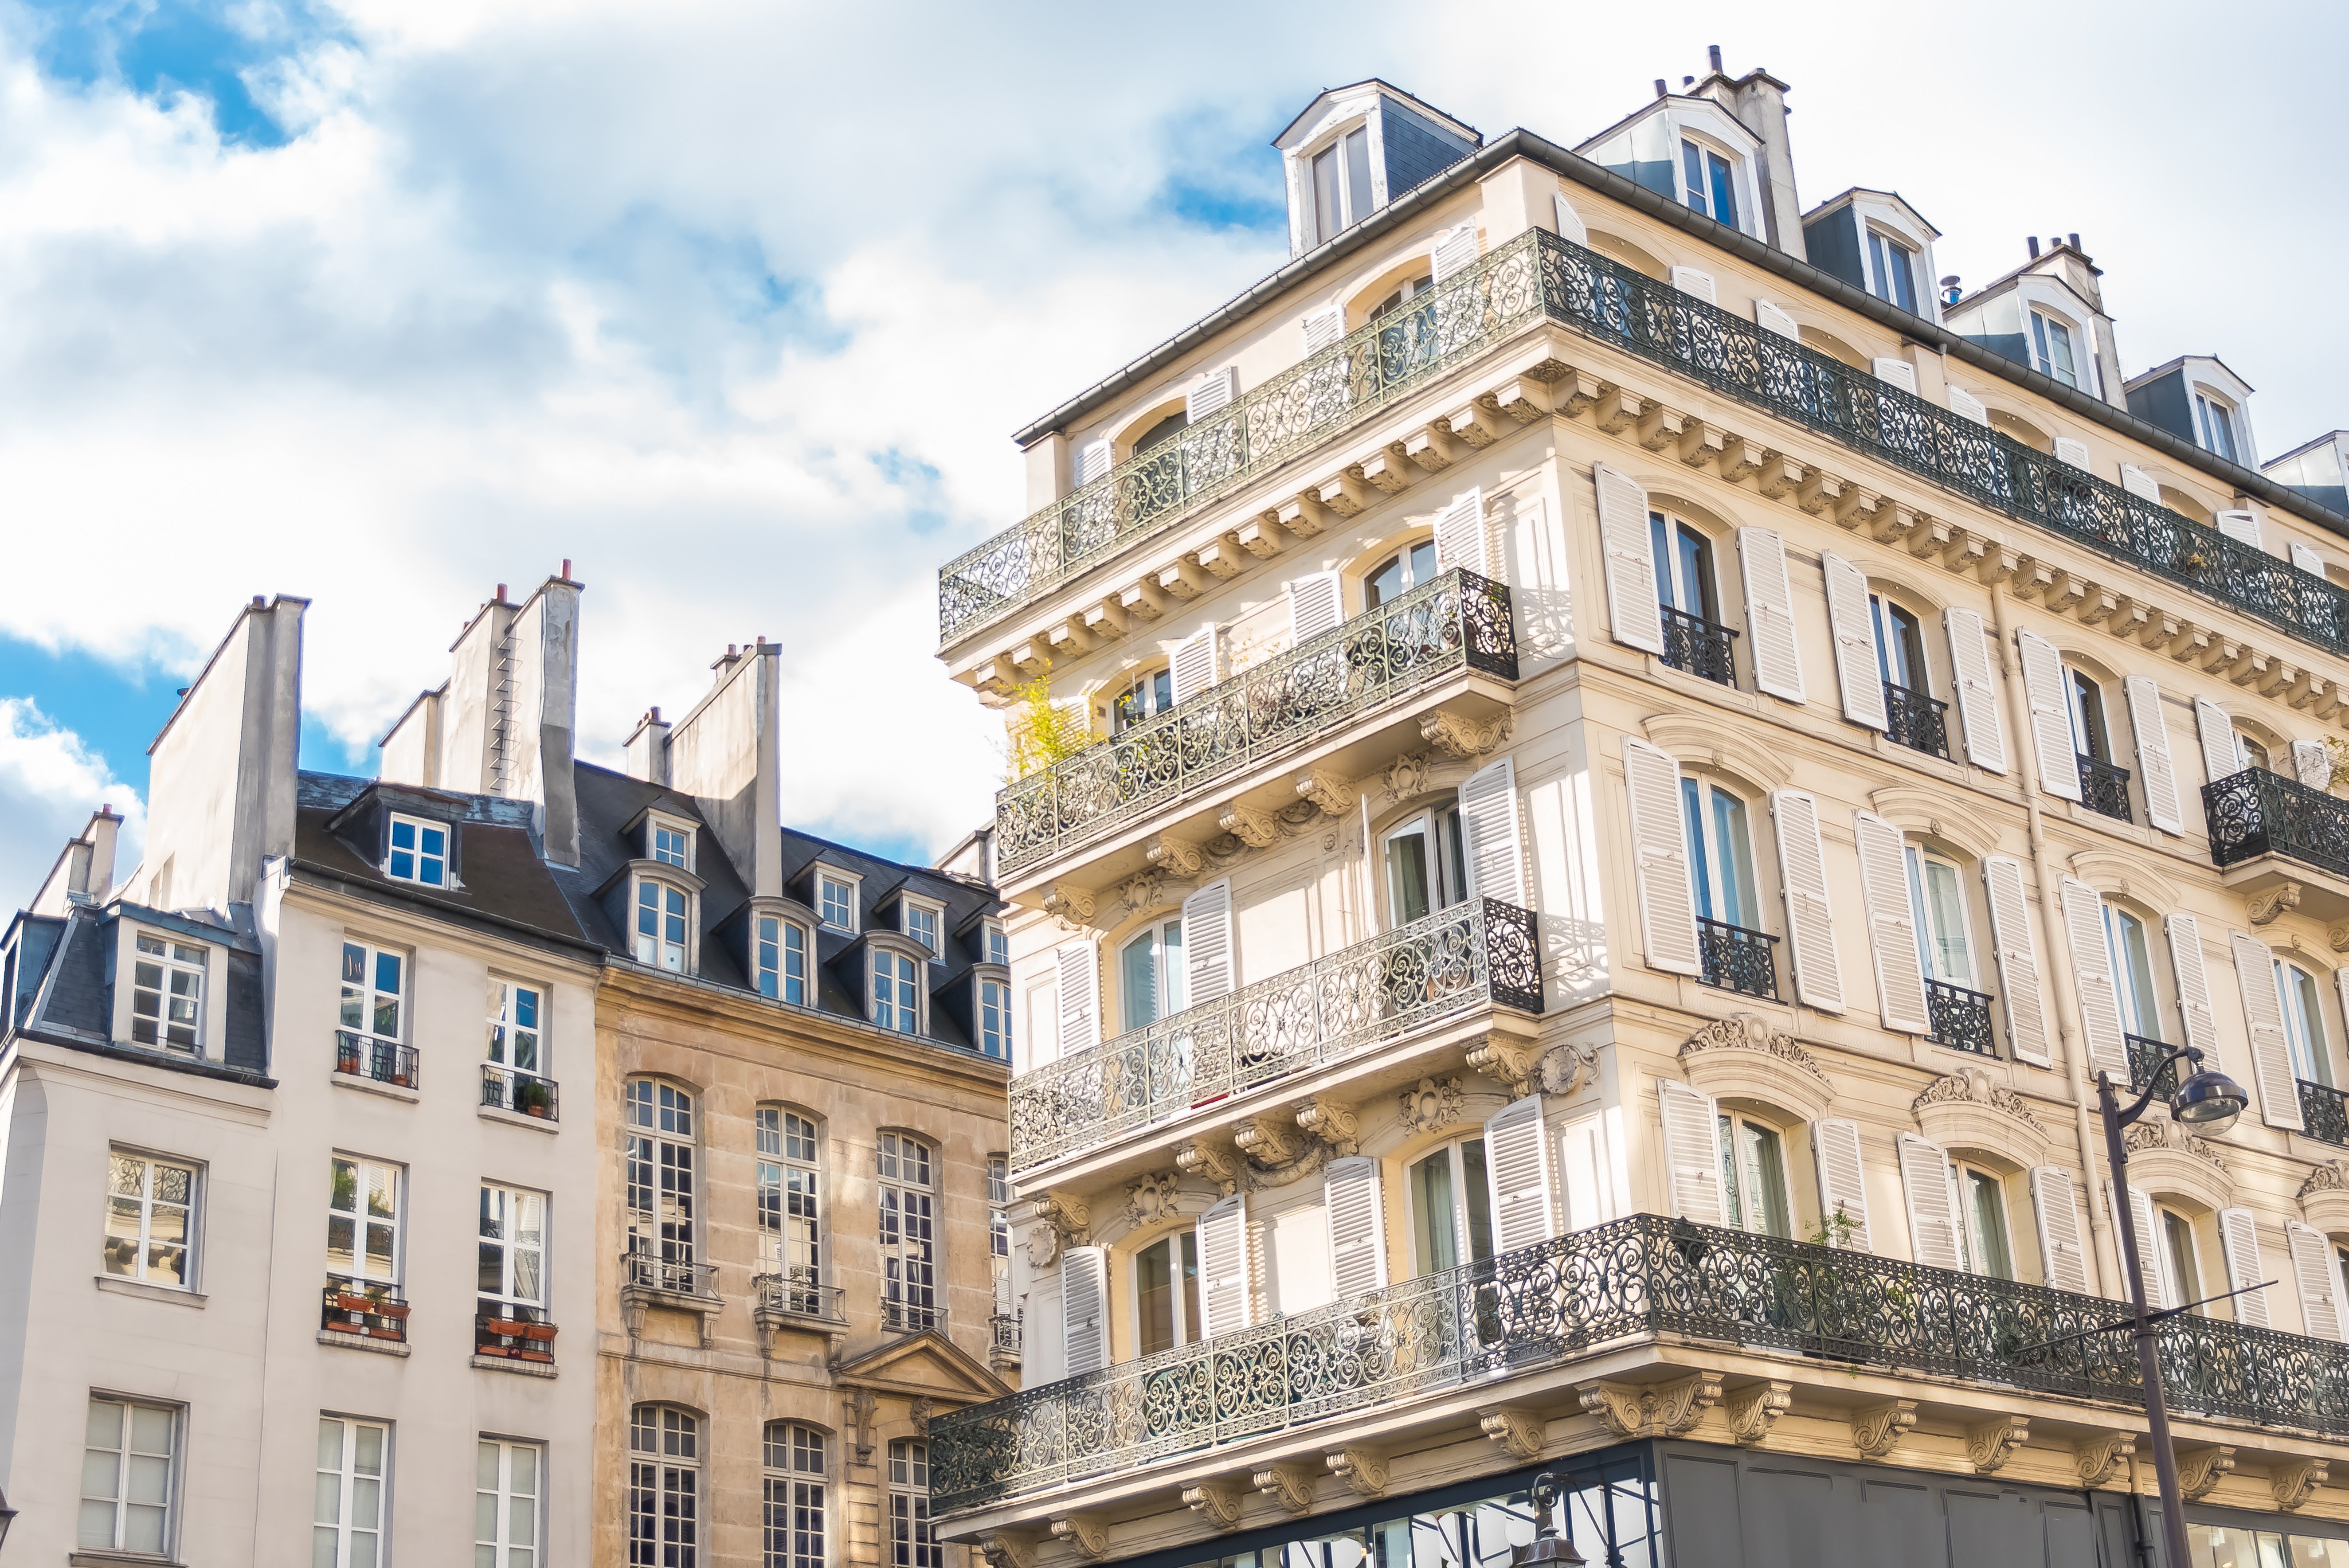 Paris, façades typiques du centre, beaux bâtiments. | Photo: Shutterstock